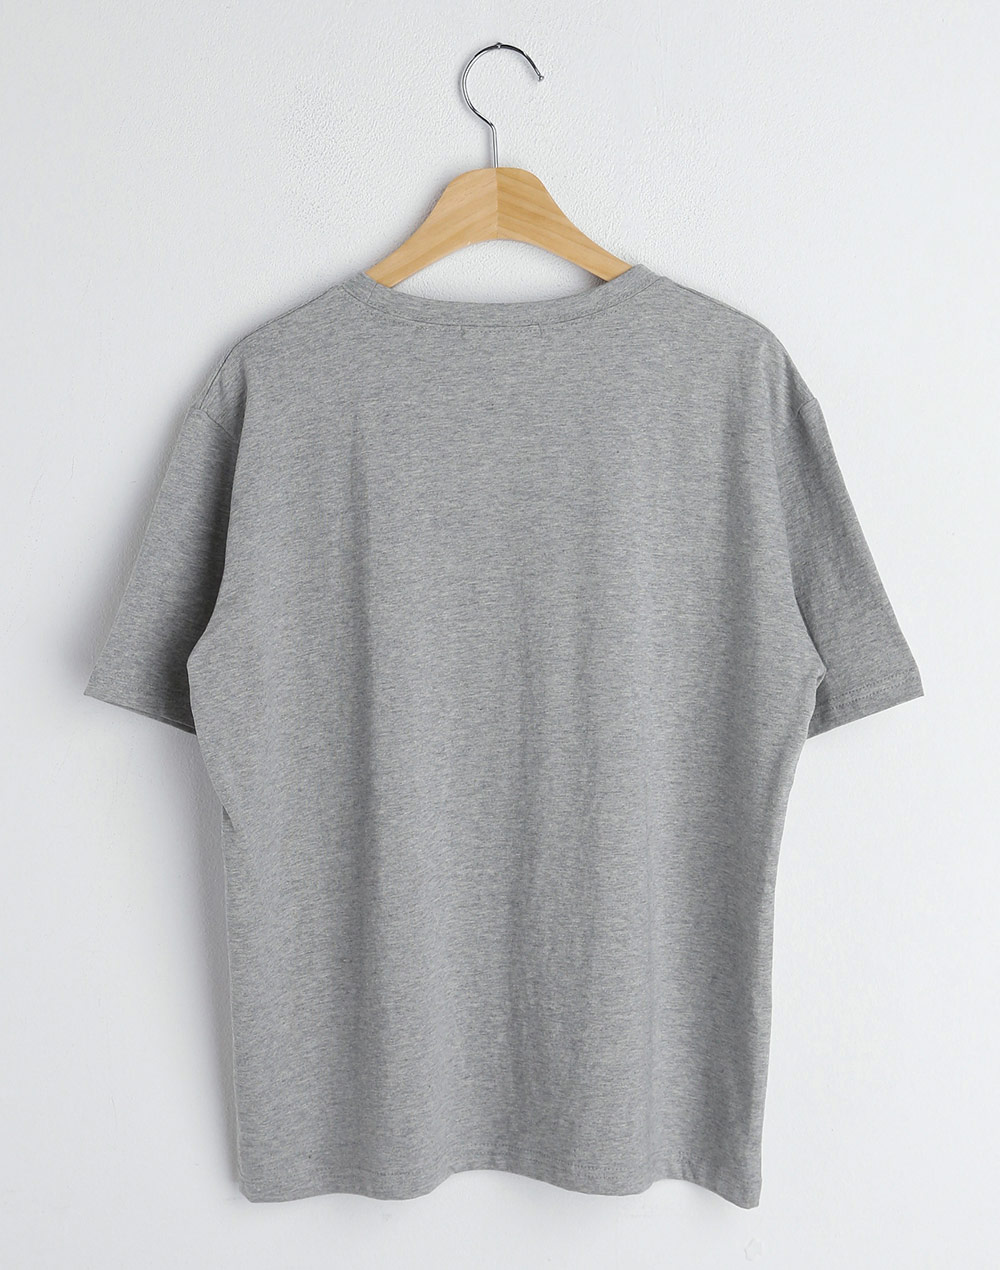 DALMATIANS T-shirt・b278474（トップス/Tシャツ）| _yoshida_akari | 東京ガールズマーケット